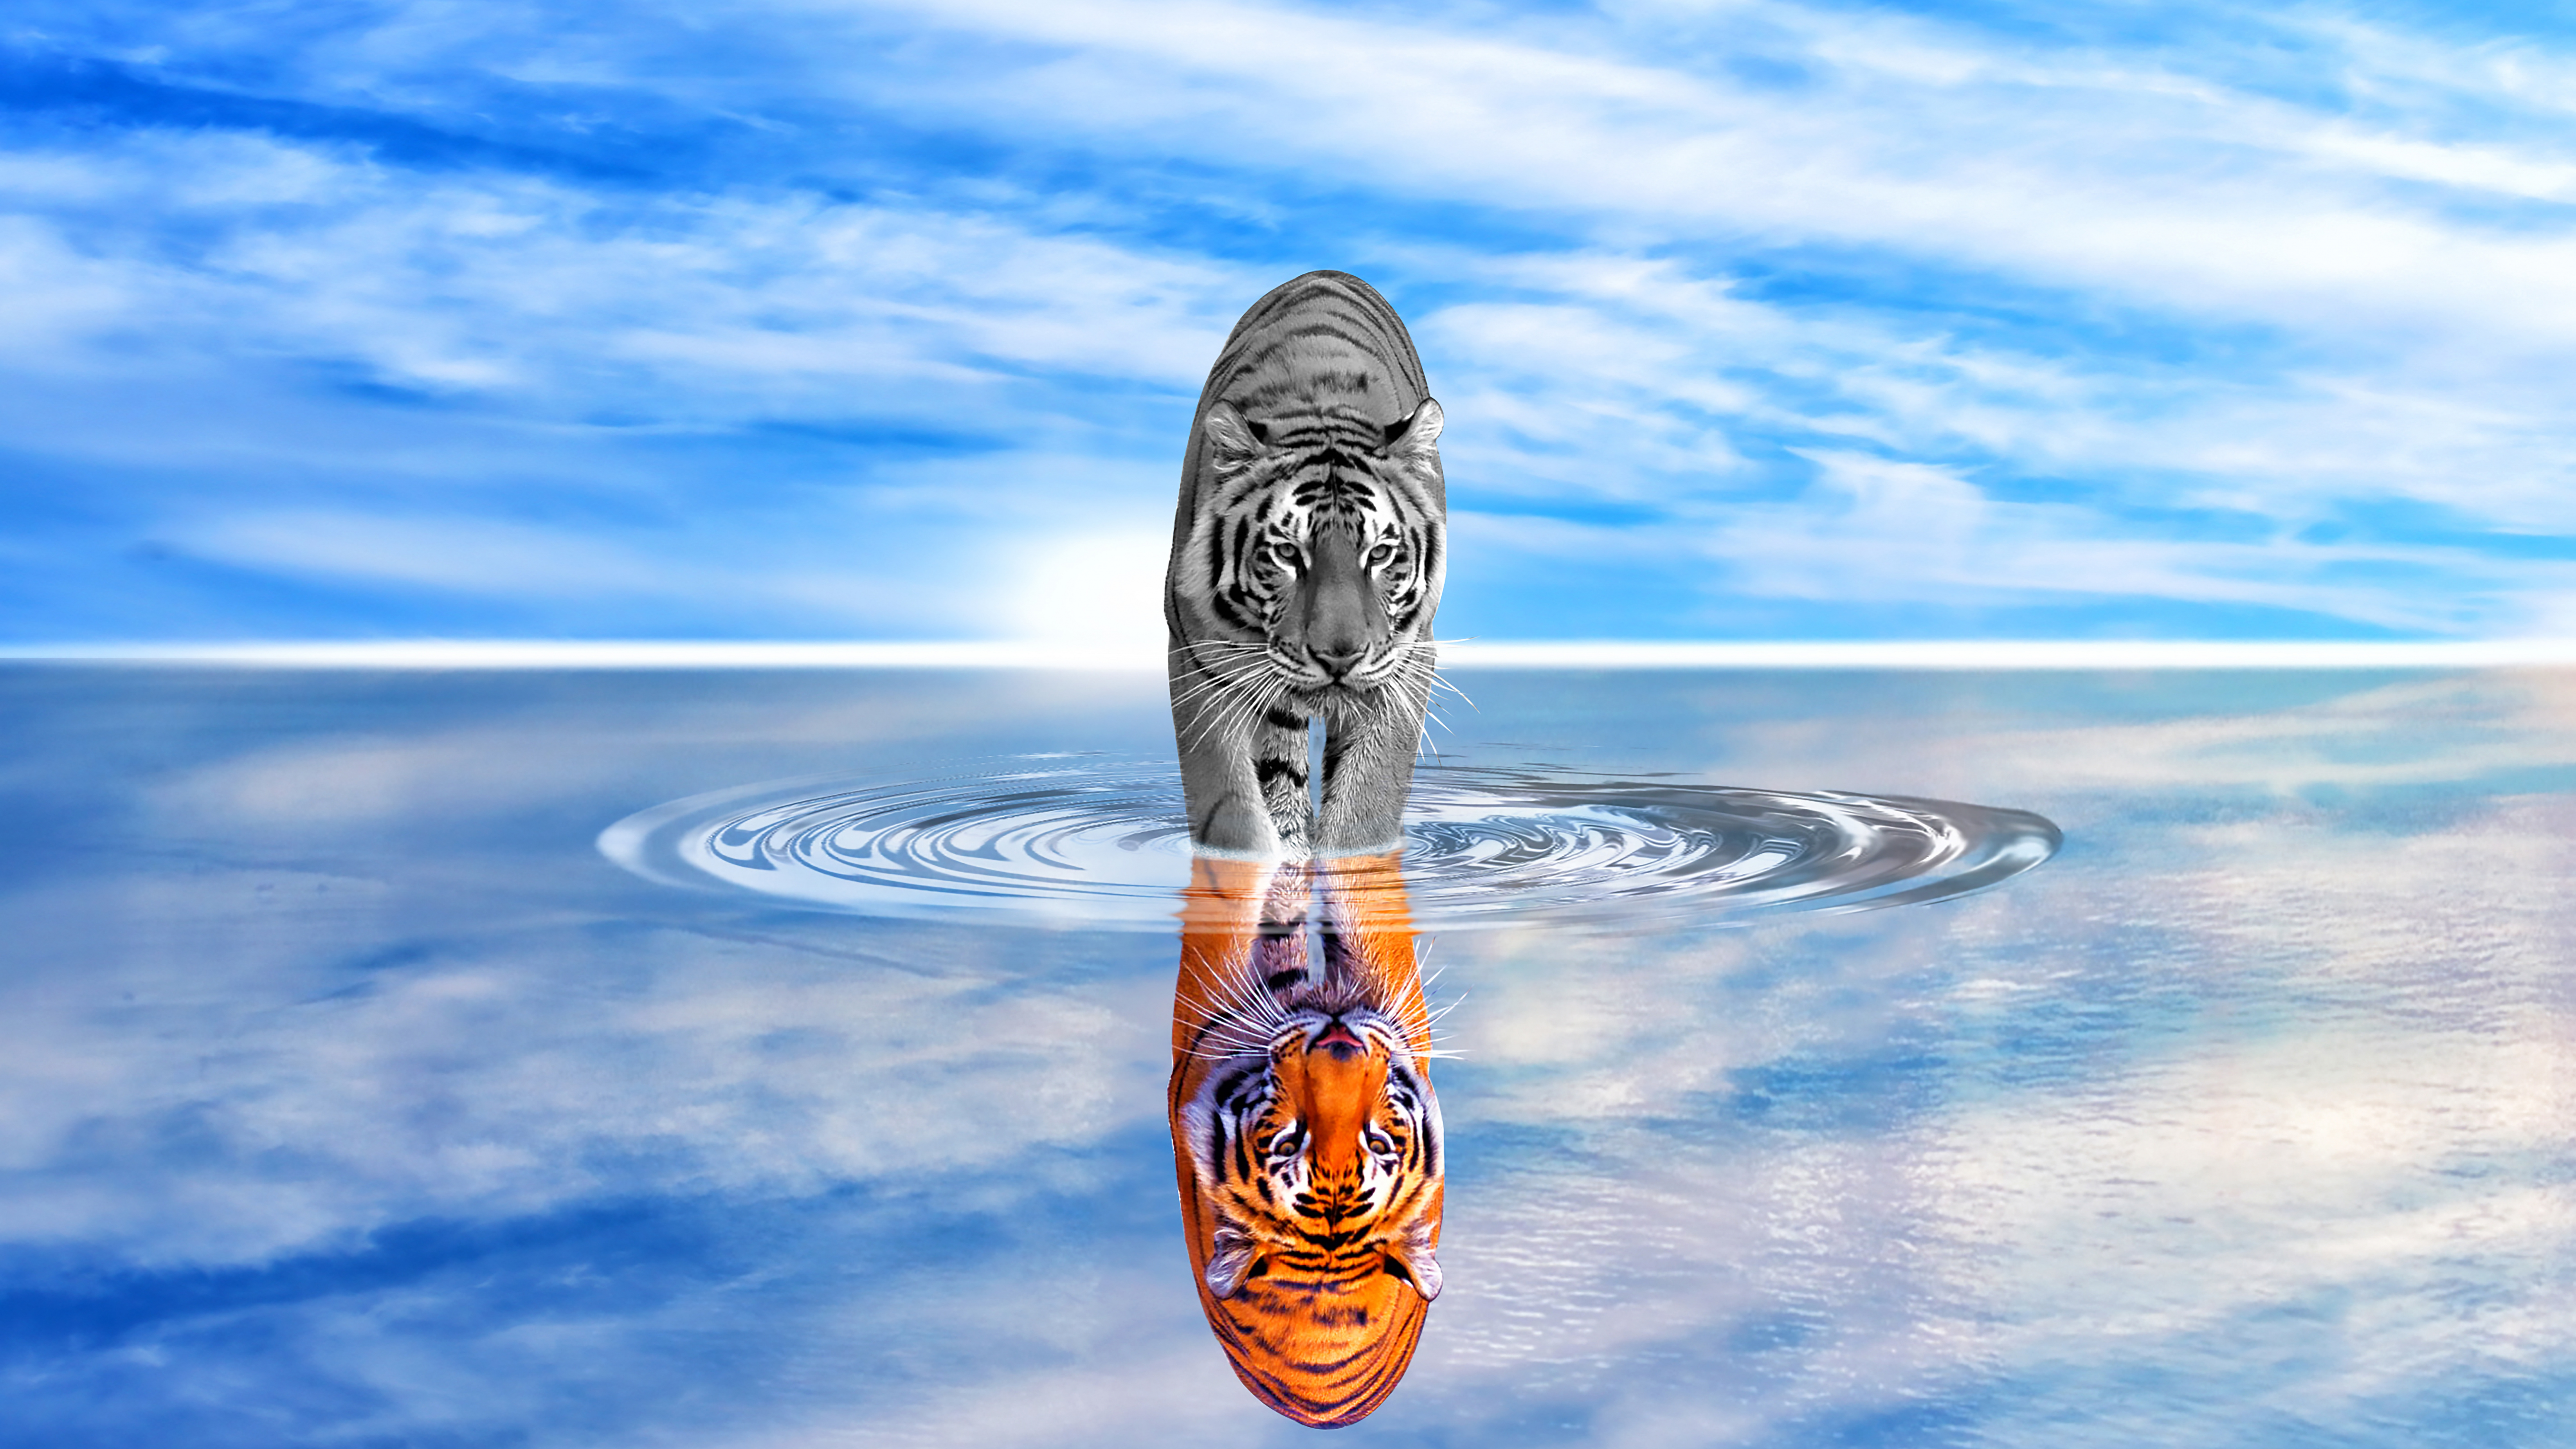 Отражение Льва в воде